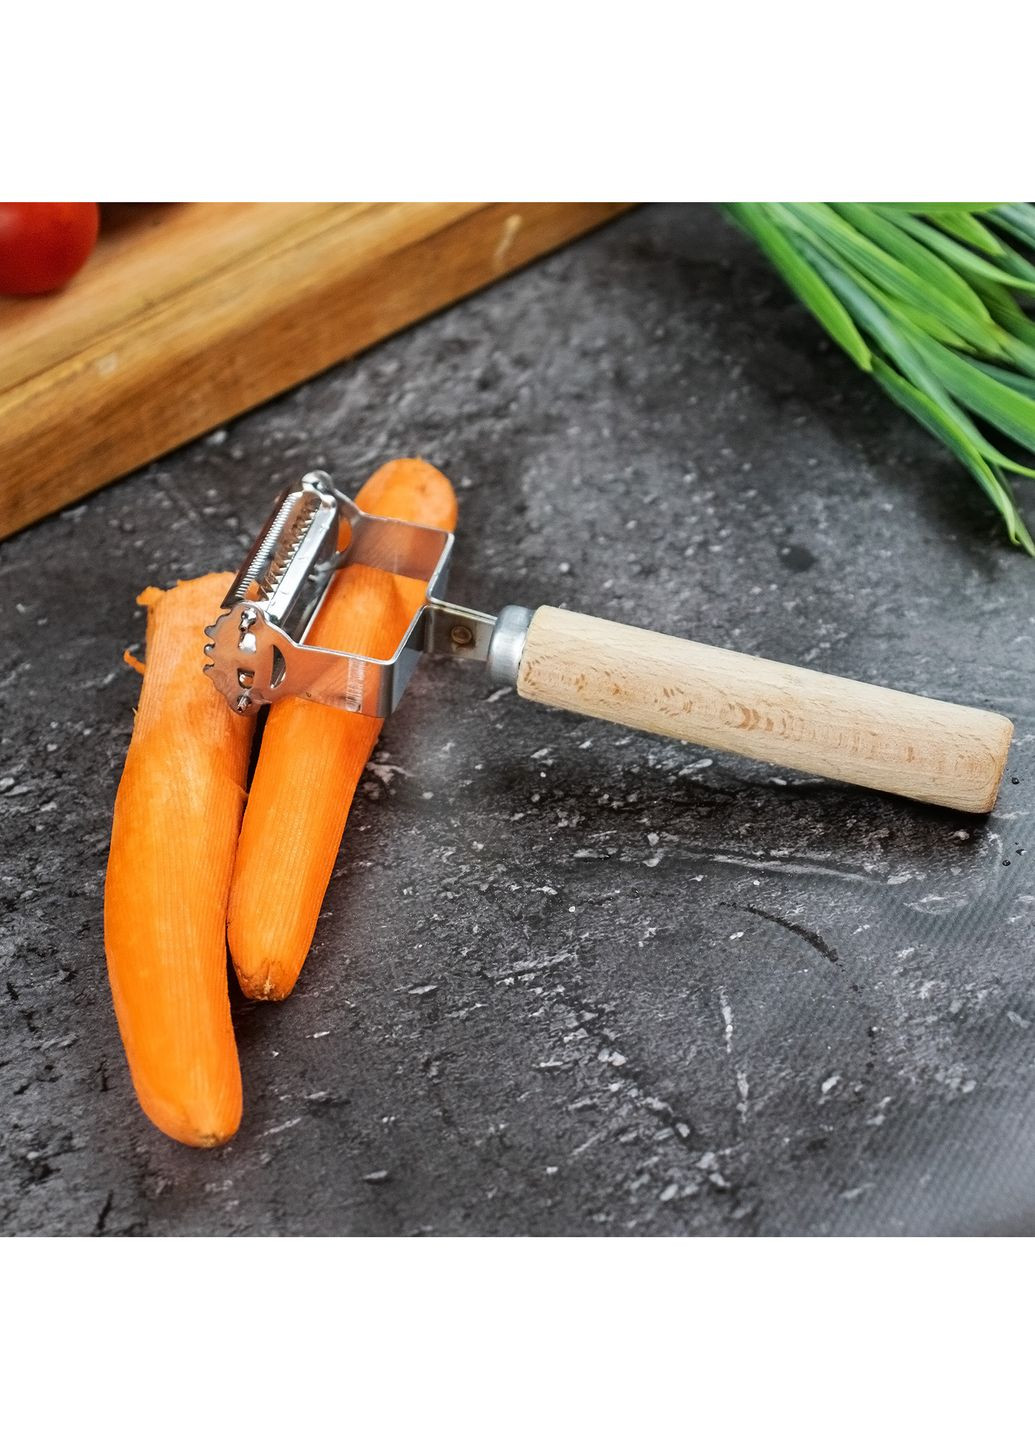 Нож для очистки экономка + шинковка для овощей и корейской морковки стальная двухсторонняя 17 см Master Class (260330887)